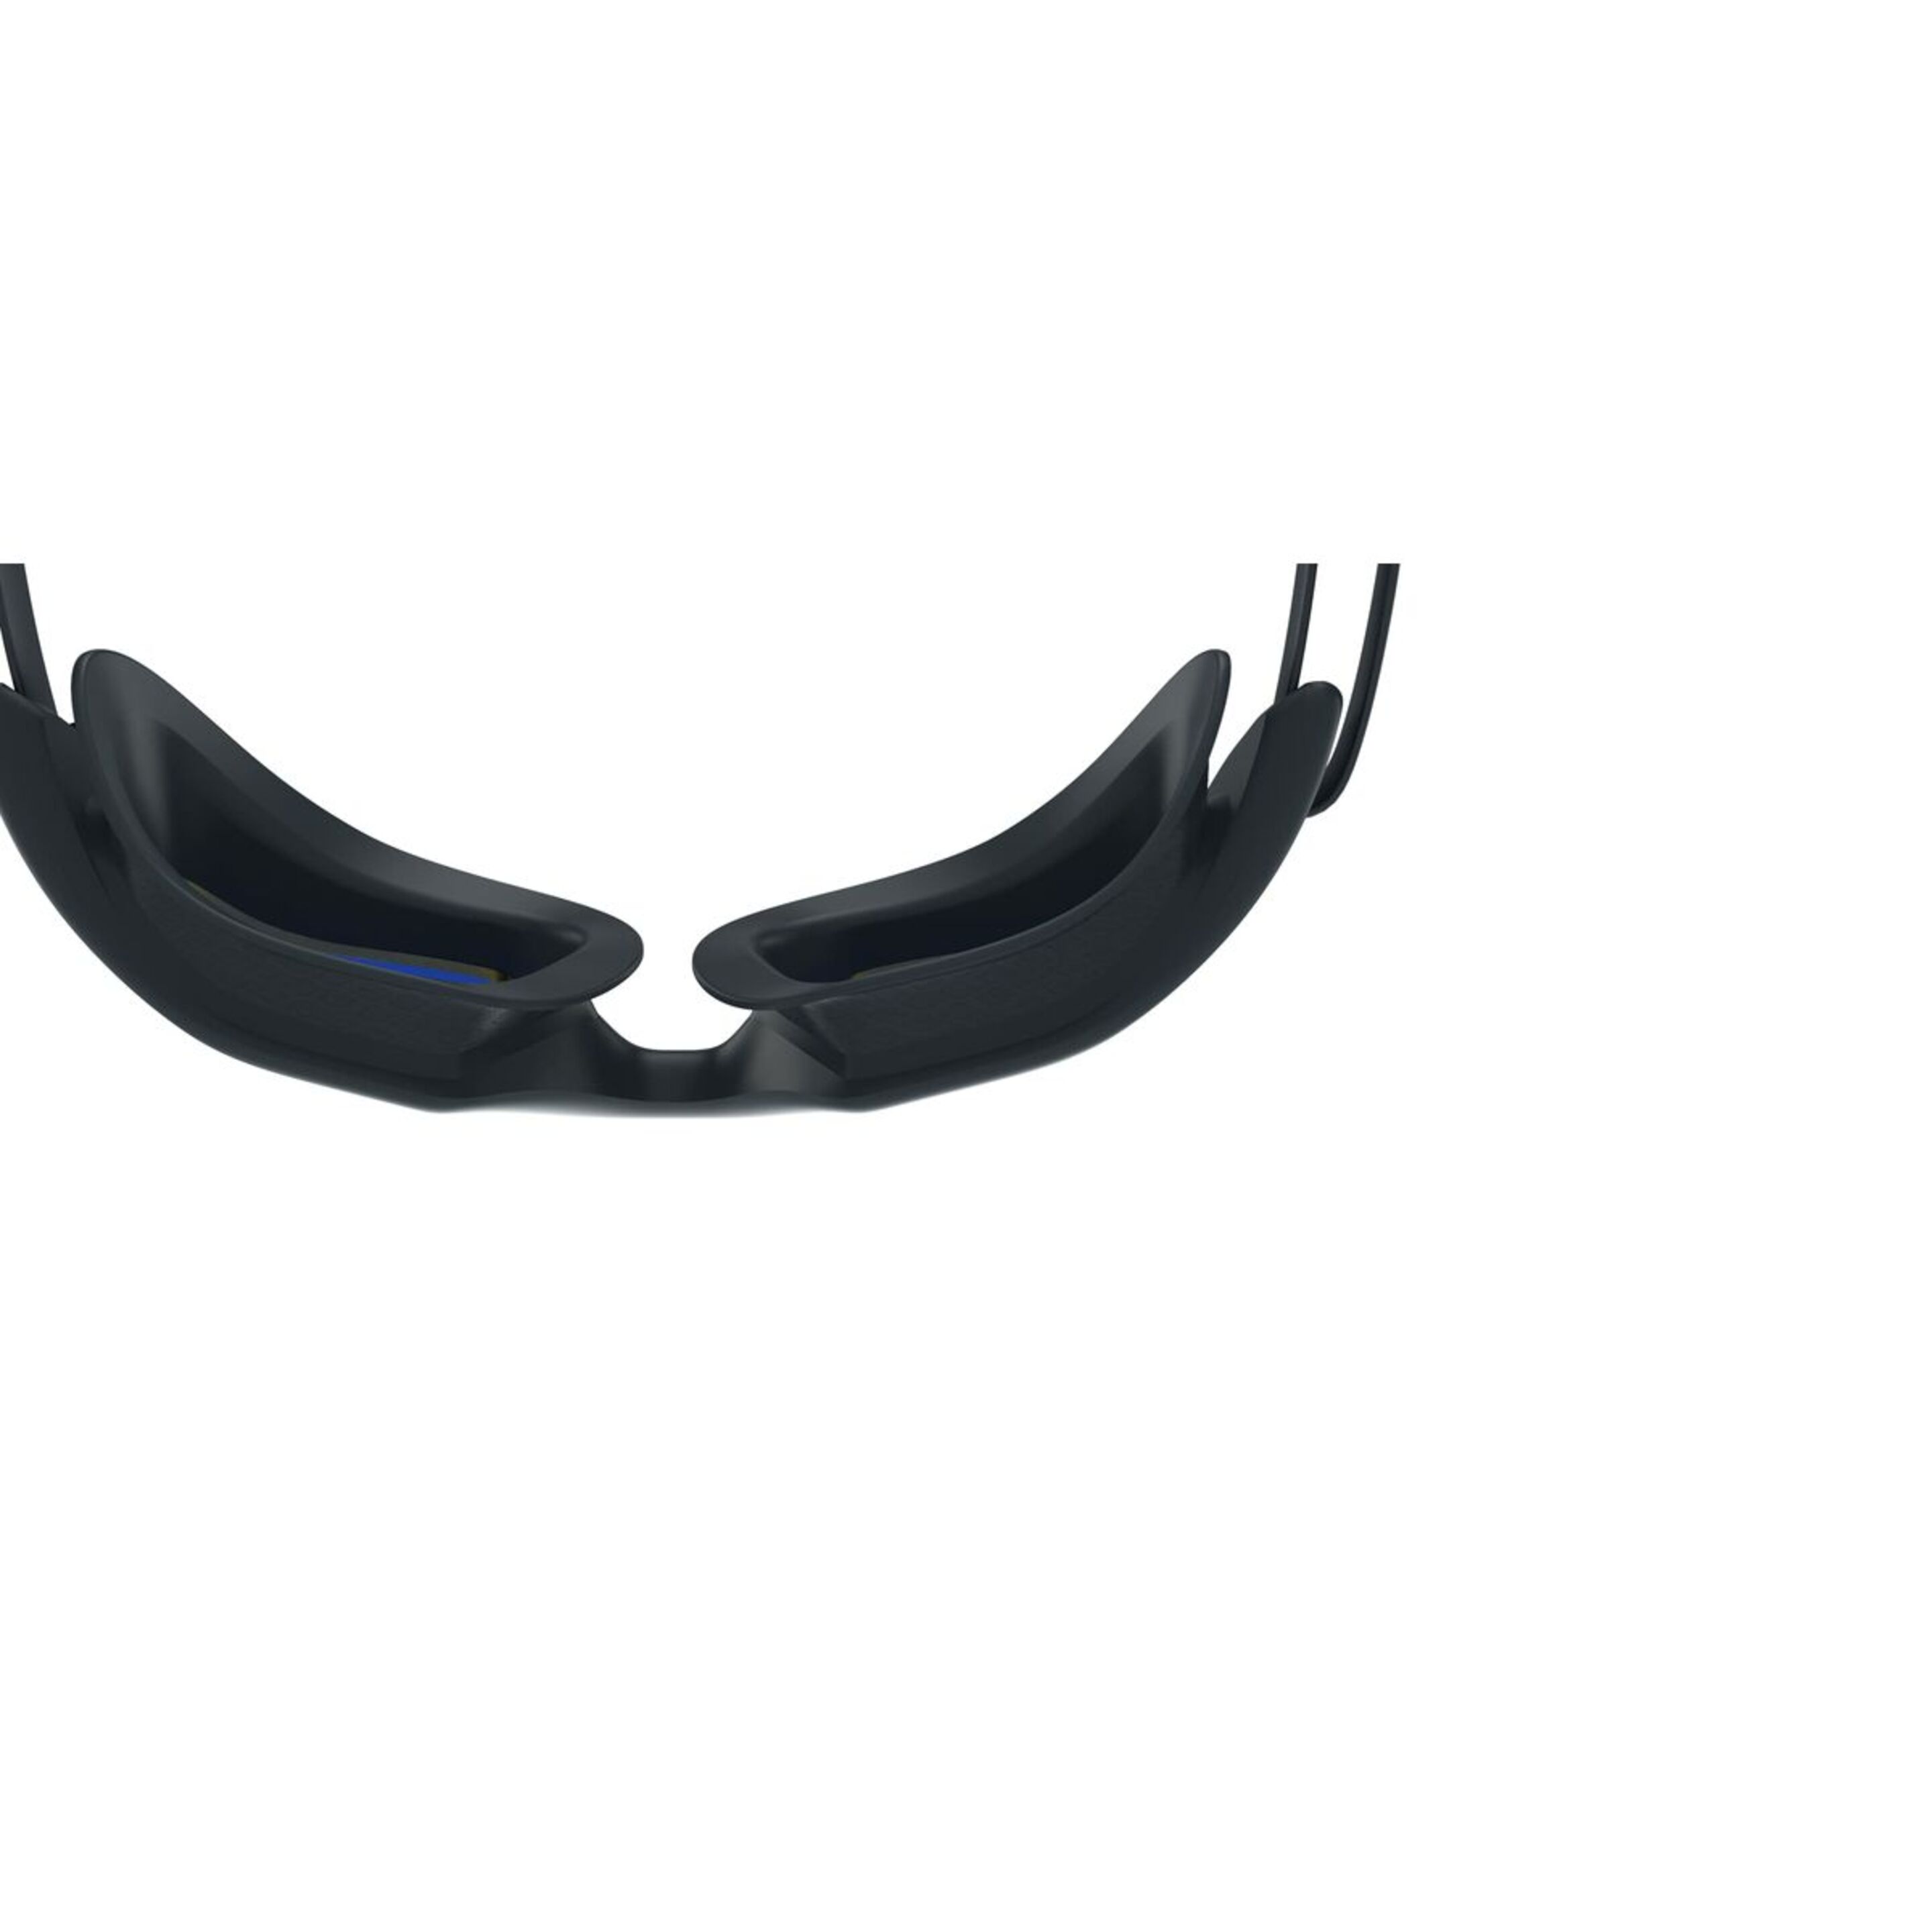 Óculos De Natação Speedo Hydropulse Mirror  Adultos (tamanho Único) - Azul - Óculos de Natação | Sport Zone MKP